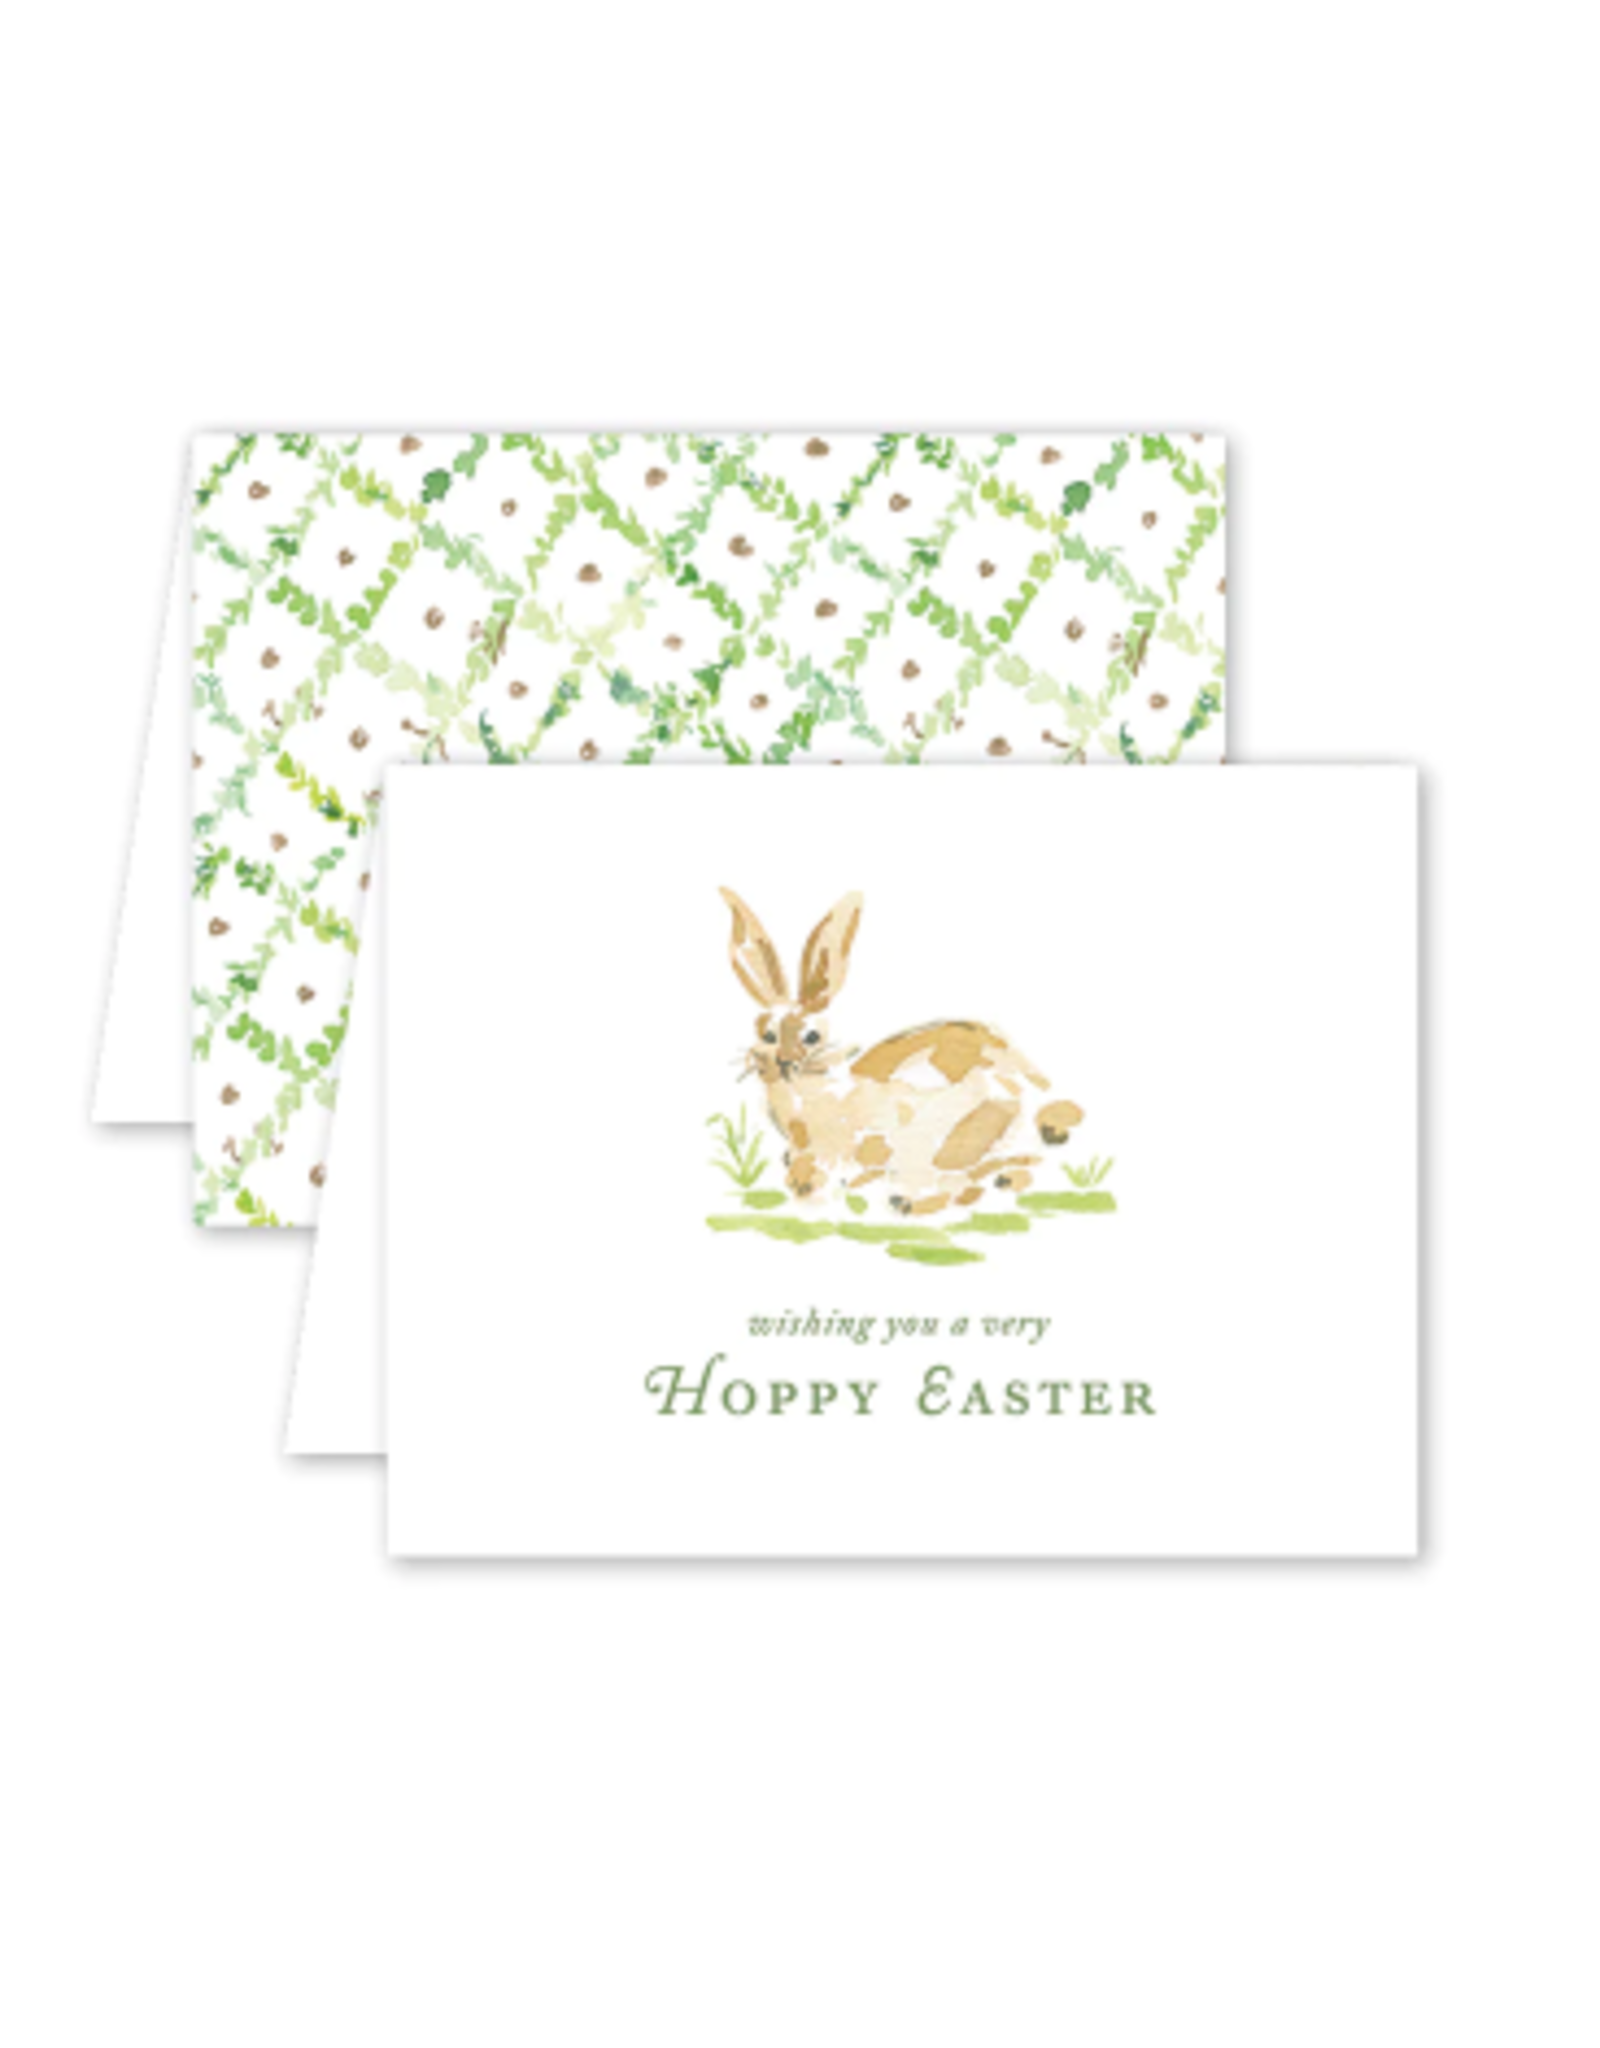 Dogwood Hill Garden Tales Bunny Card